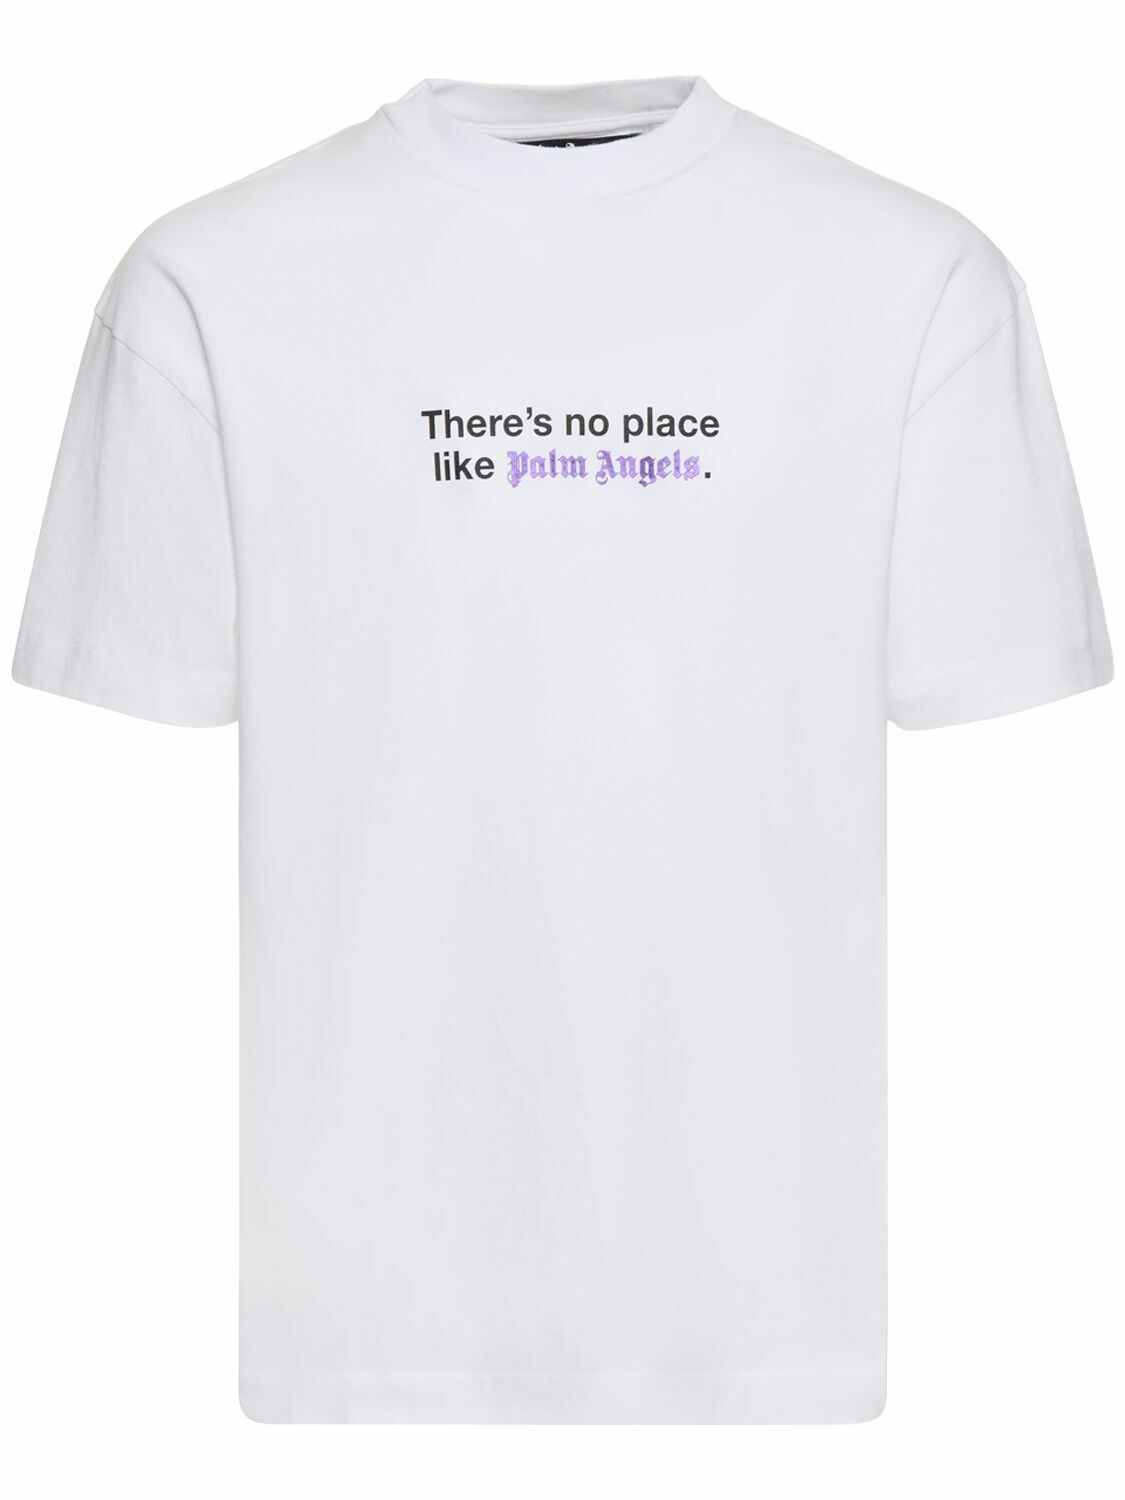 Photo: PALM ANGELS - No Place Classic Cotton T-shirt